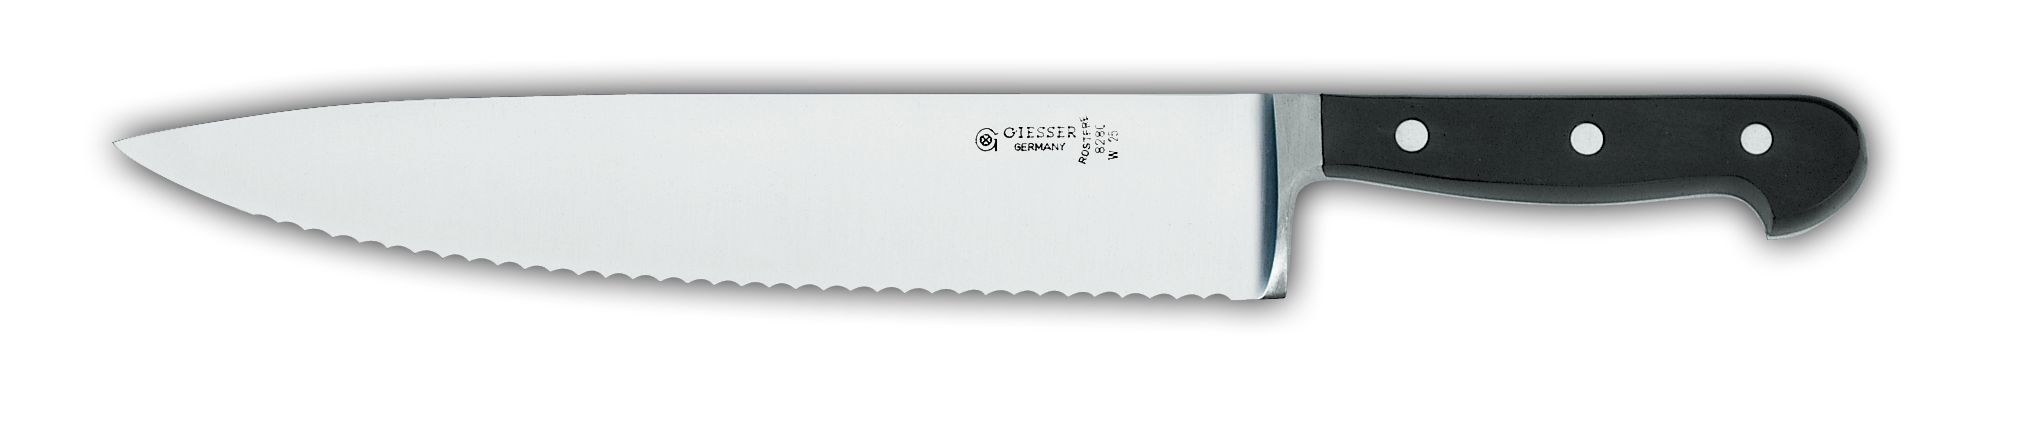 Нож поварской 8280w, широкий,  с волнистым лезвием, 30 см,  черная рукоятка